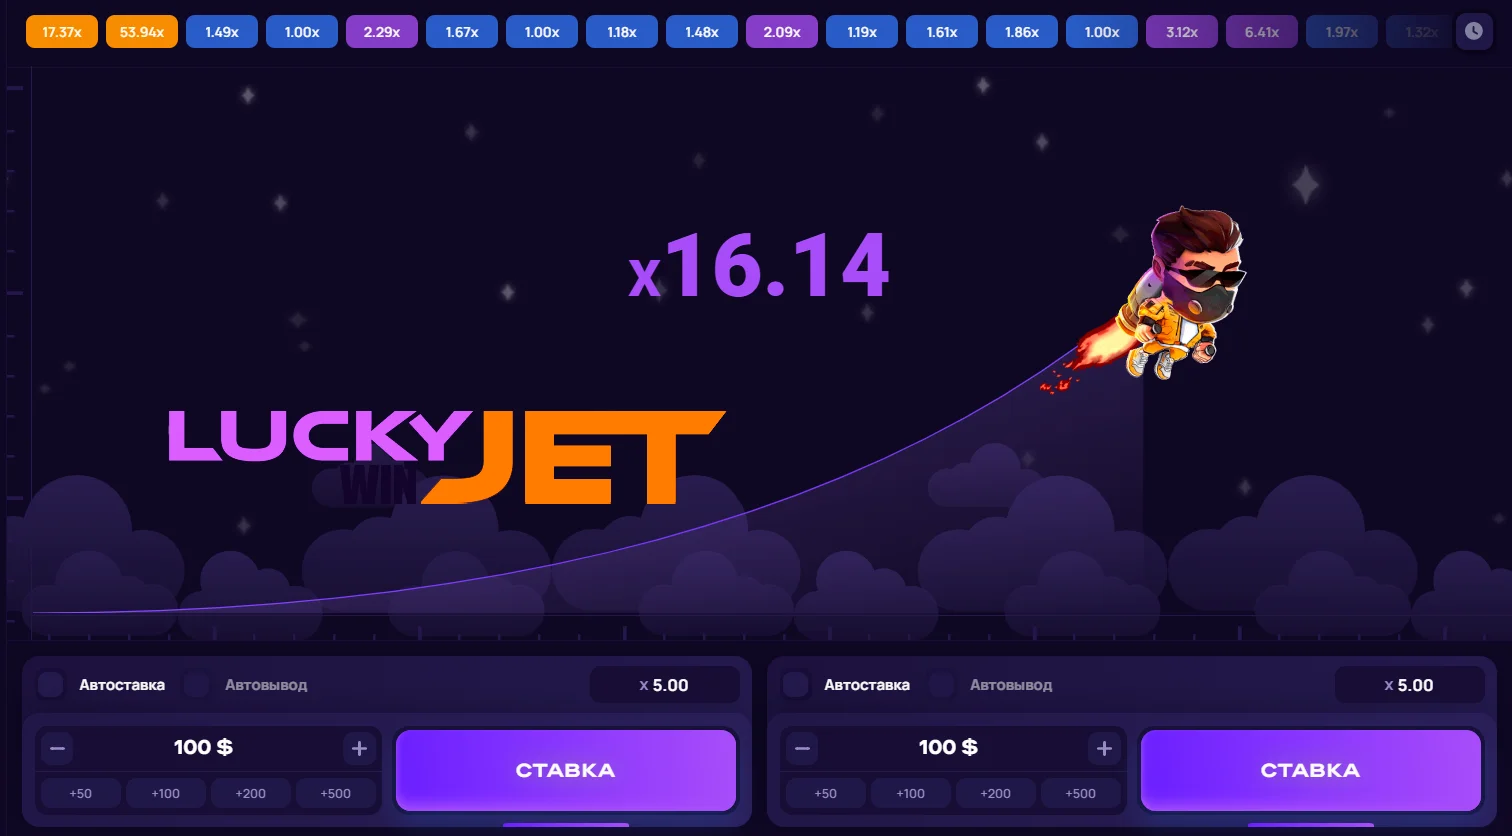 Flight of the Lucky Jet on multiplier x16